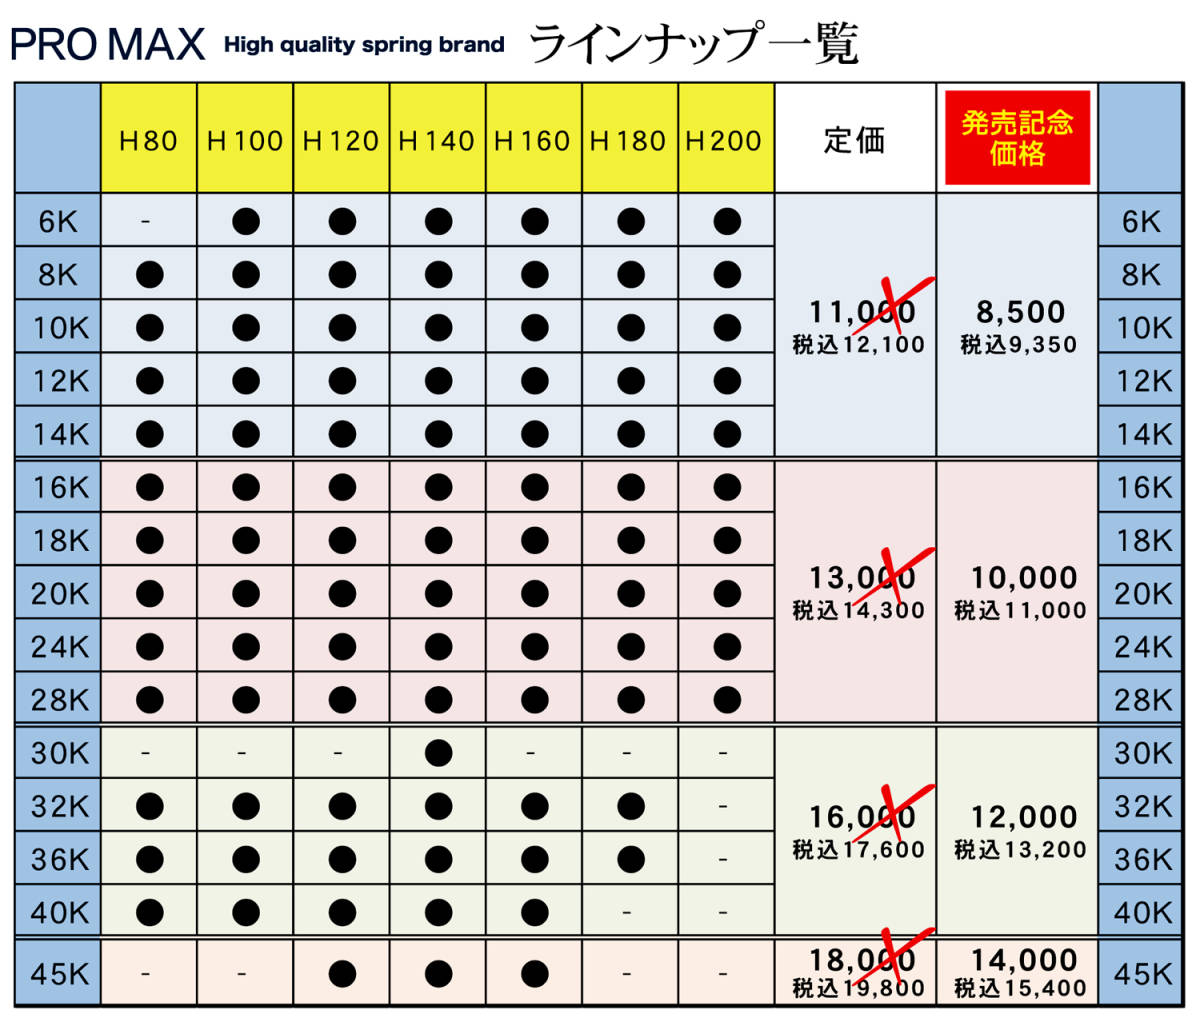 * продажа память цена * PRO MAX*ID62 ID63(62-63 двоякое применение )-H80-20K[2 шт. комплект ] Pro Max series-wound spring подвеска spring амортизатор 2